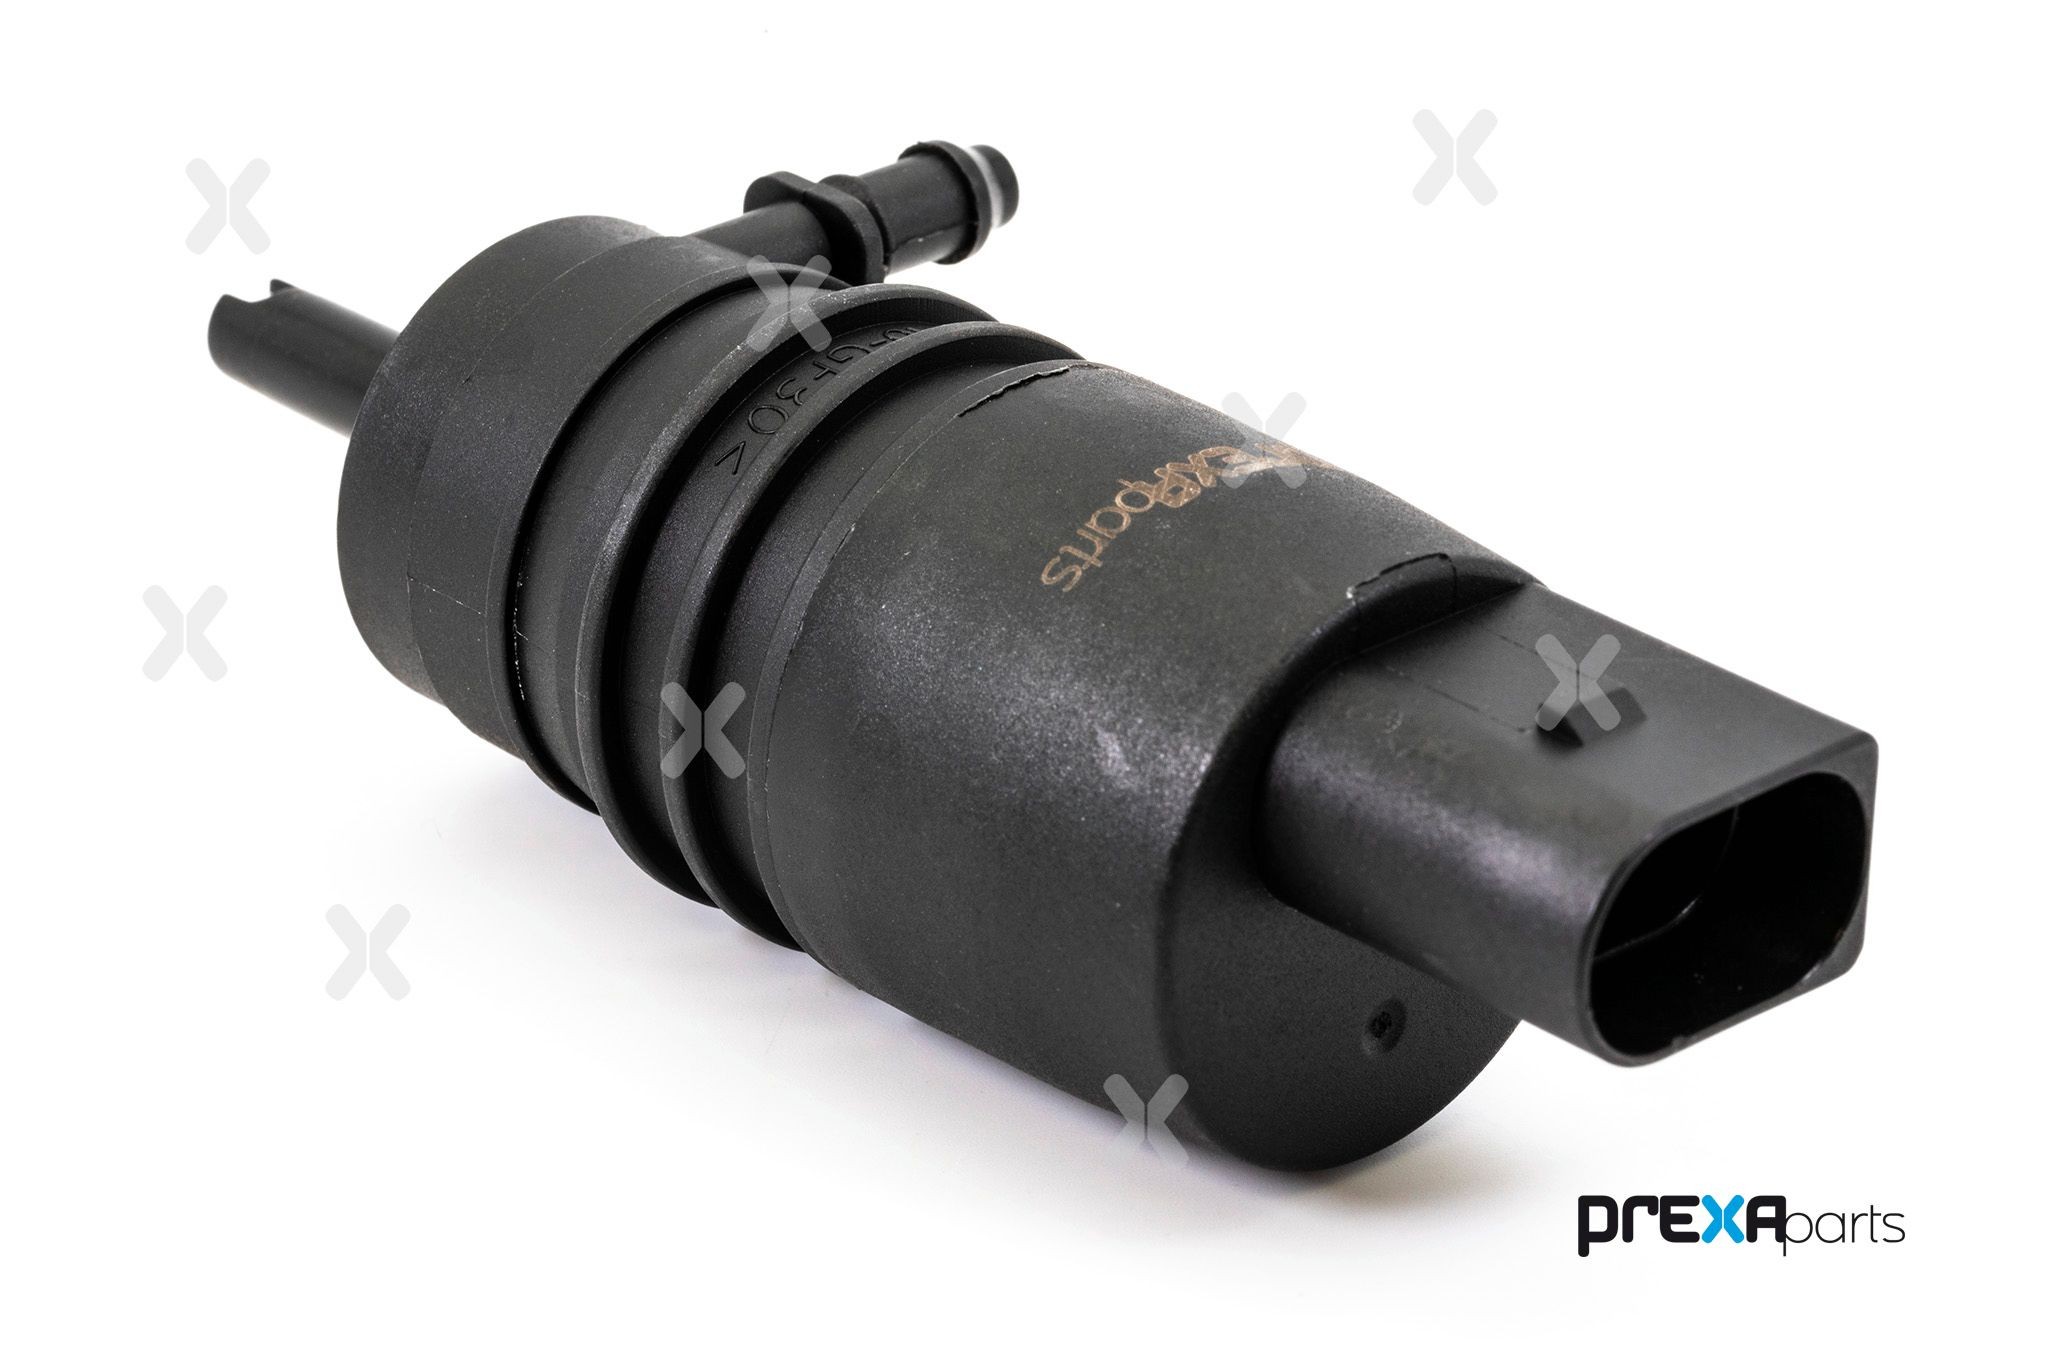 PREXAparts P208001 Water pump, headlight cleaning Skoda Superb 3u 1.9 TDI 130 hp Diesel 2003 price